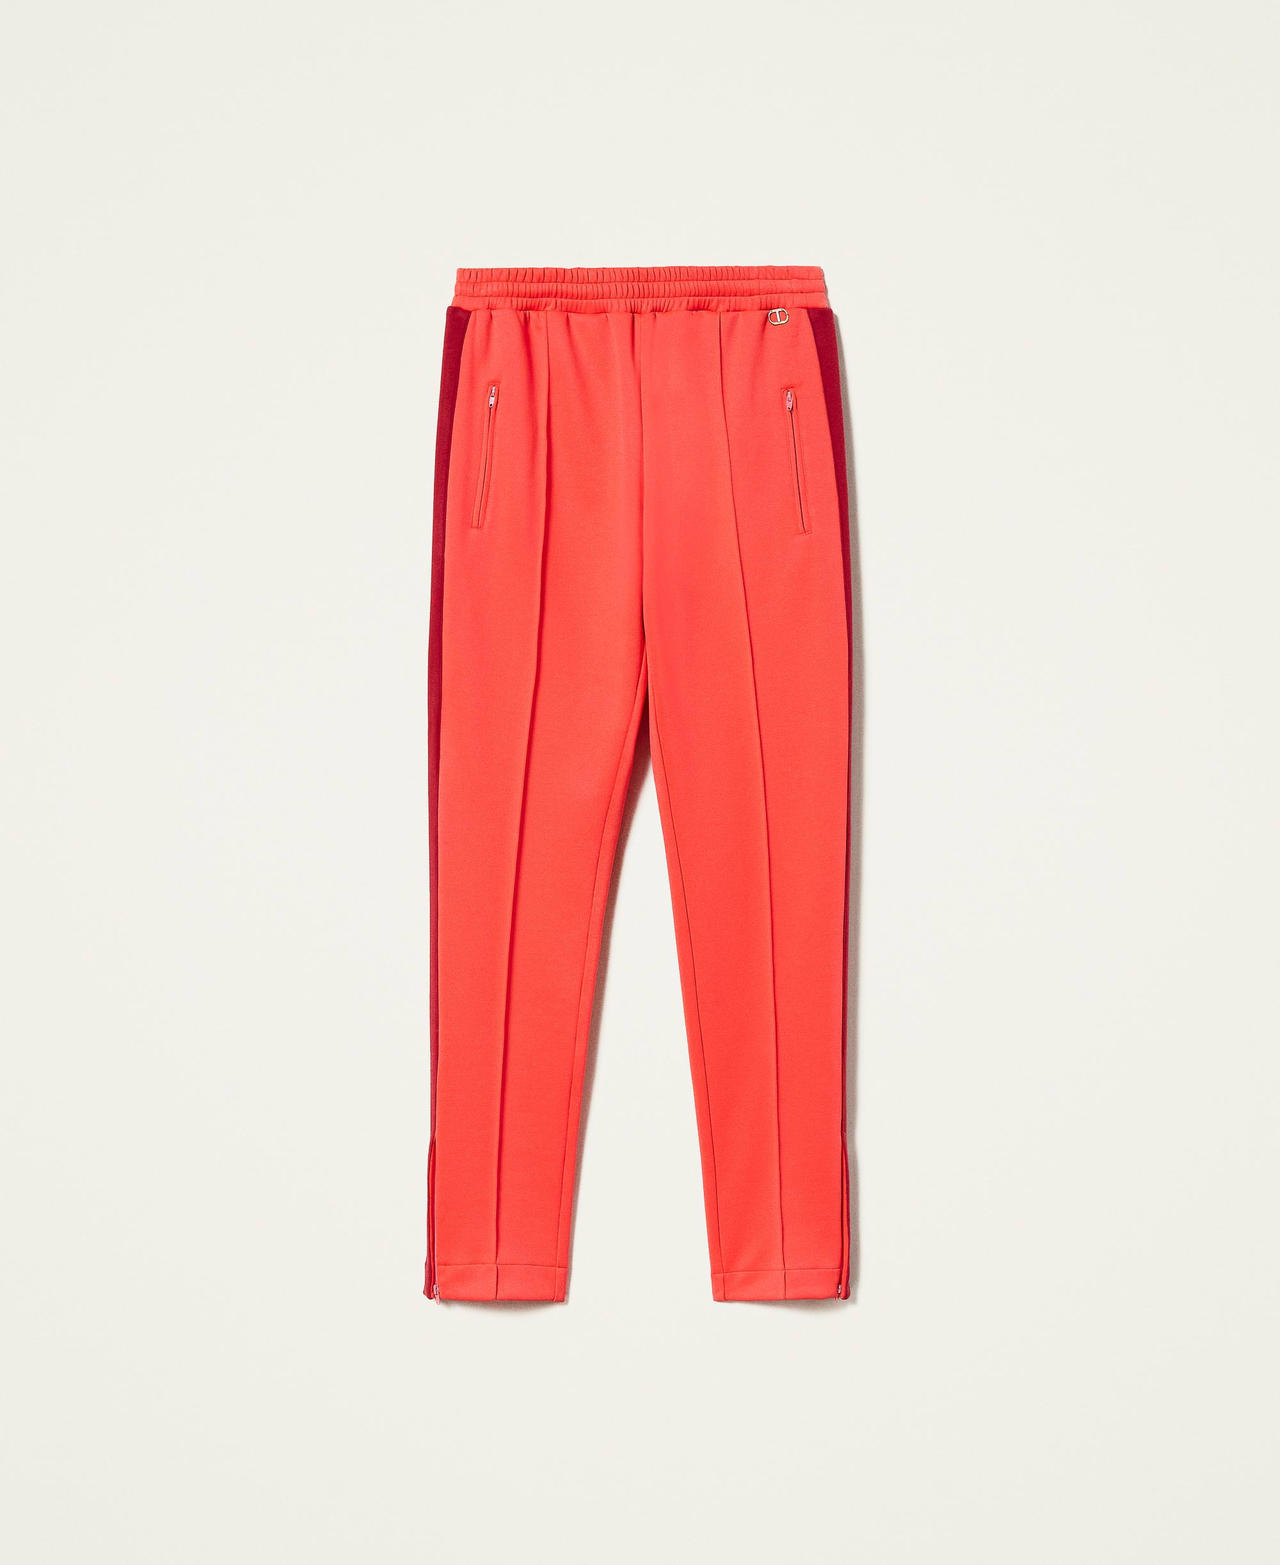 Pantalon cigarette avec bandes latérales Bicolore Coral Candy / Rouge Framboise Foncé Femme 212TT2360-0S